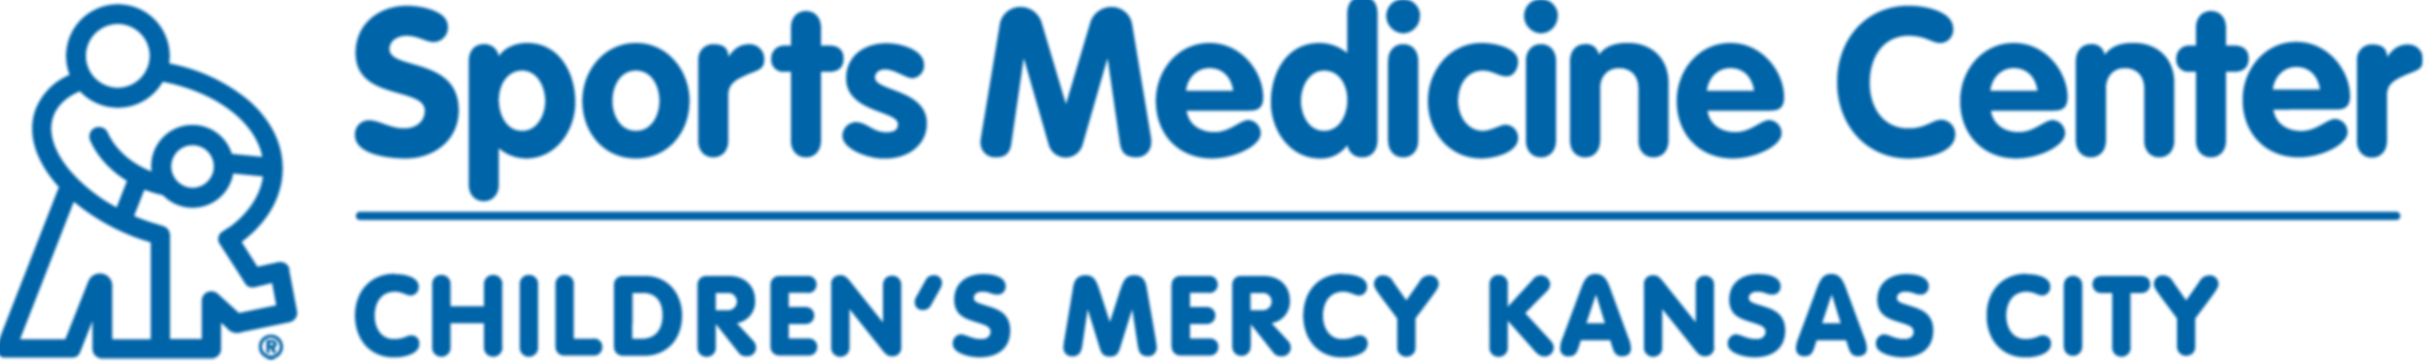 Children's Mercy Sports Medicine